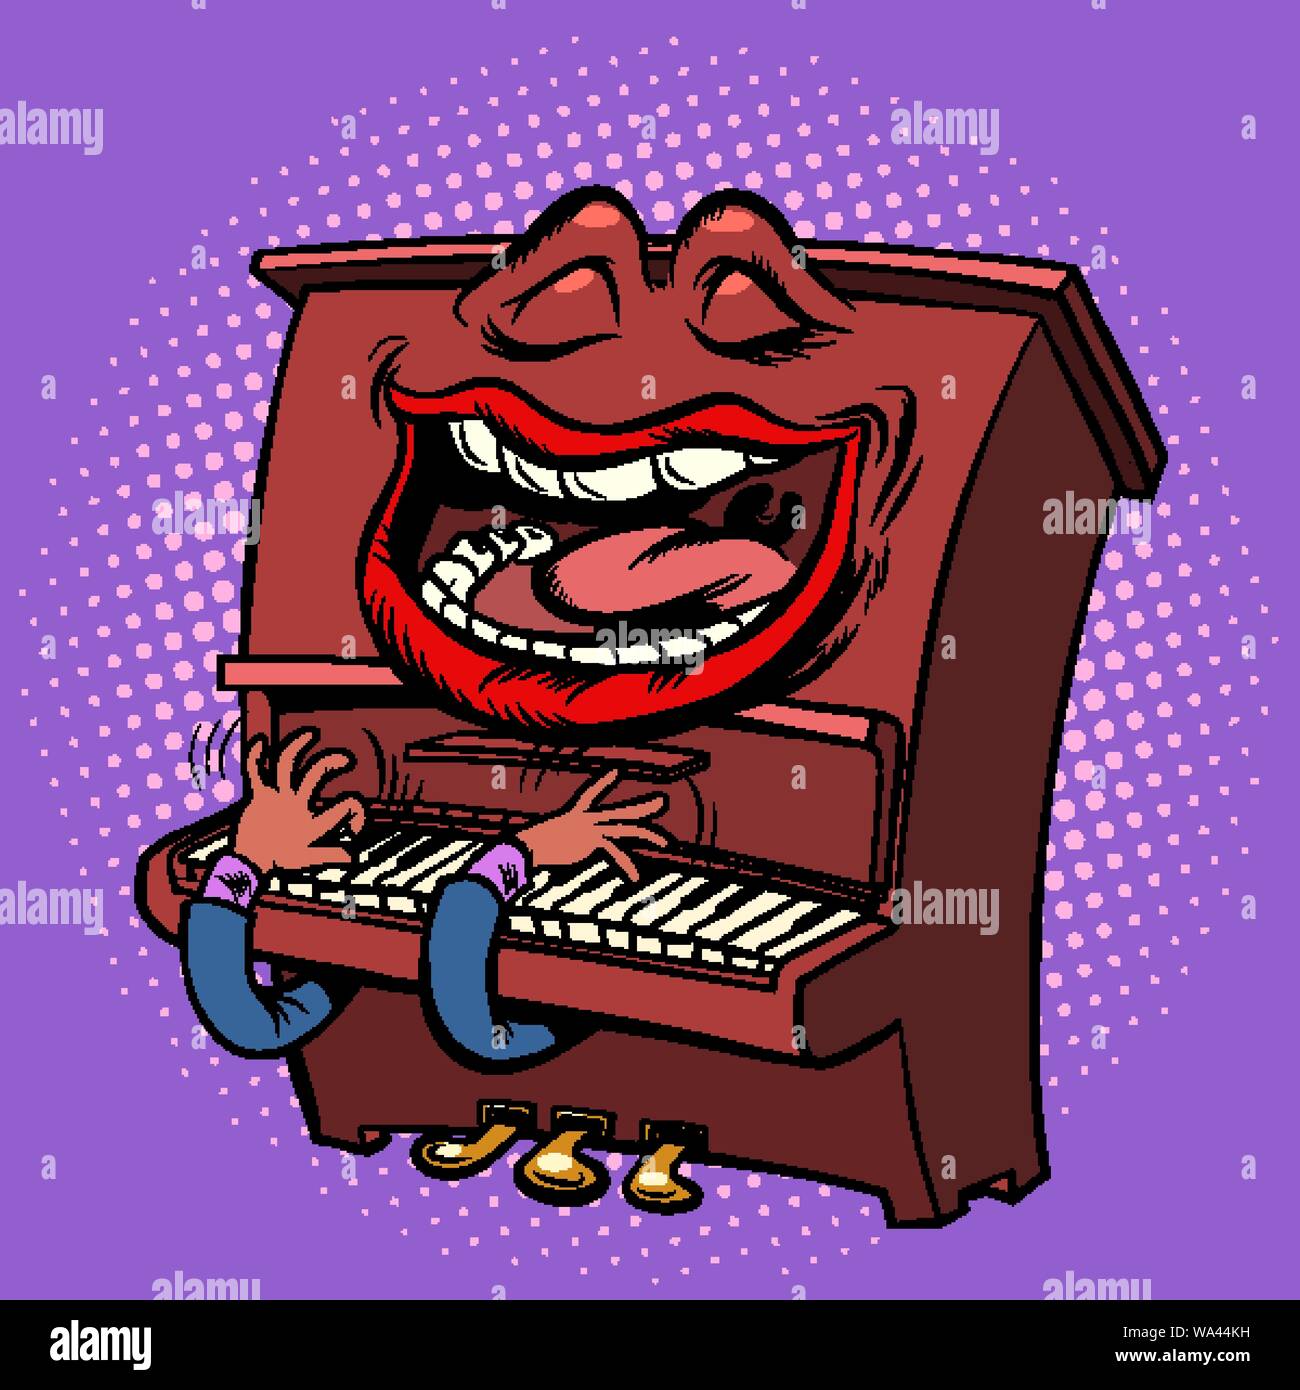 Emoji-zeichen emotion Klavier Musikinstrument Stock Vektor